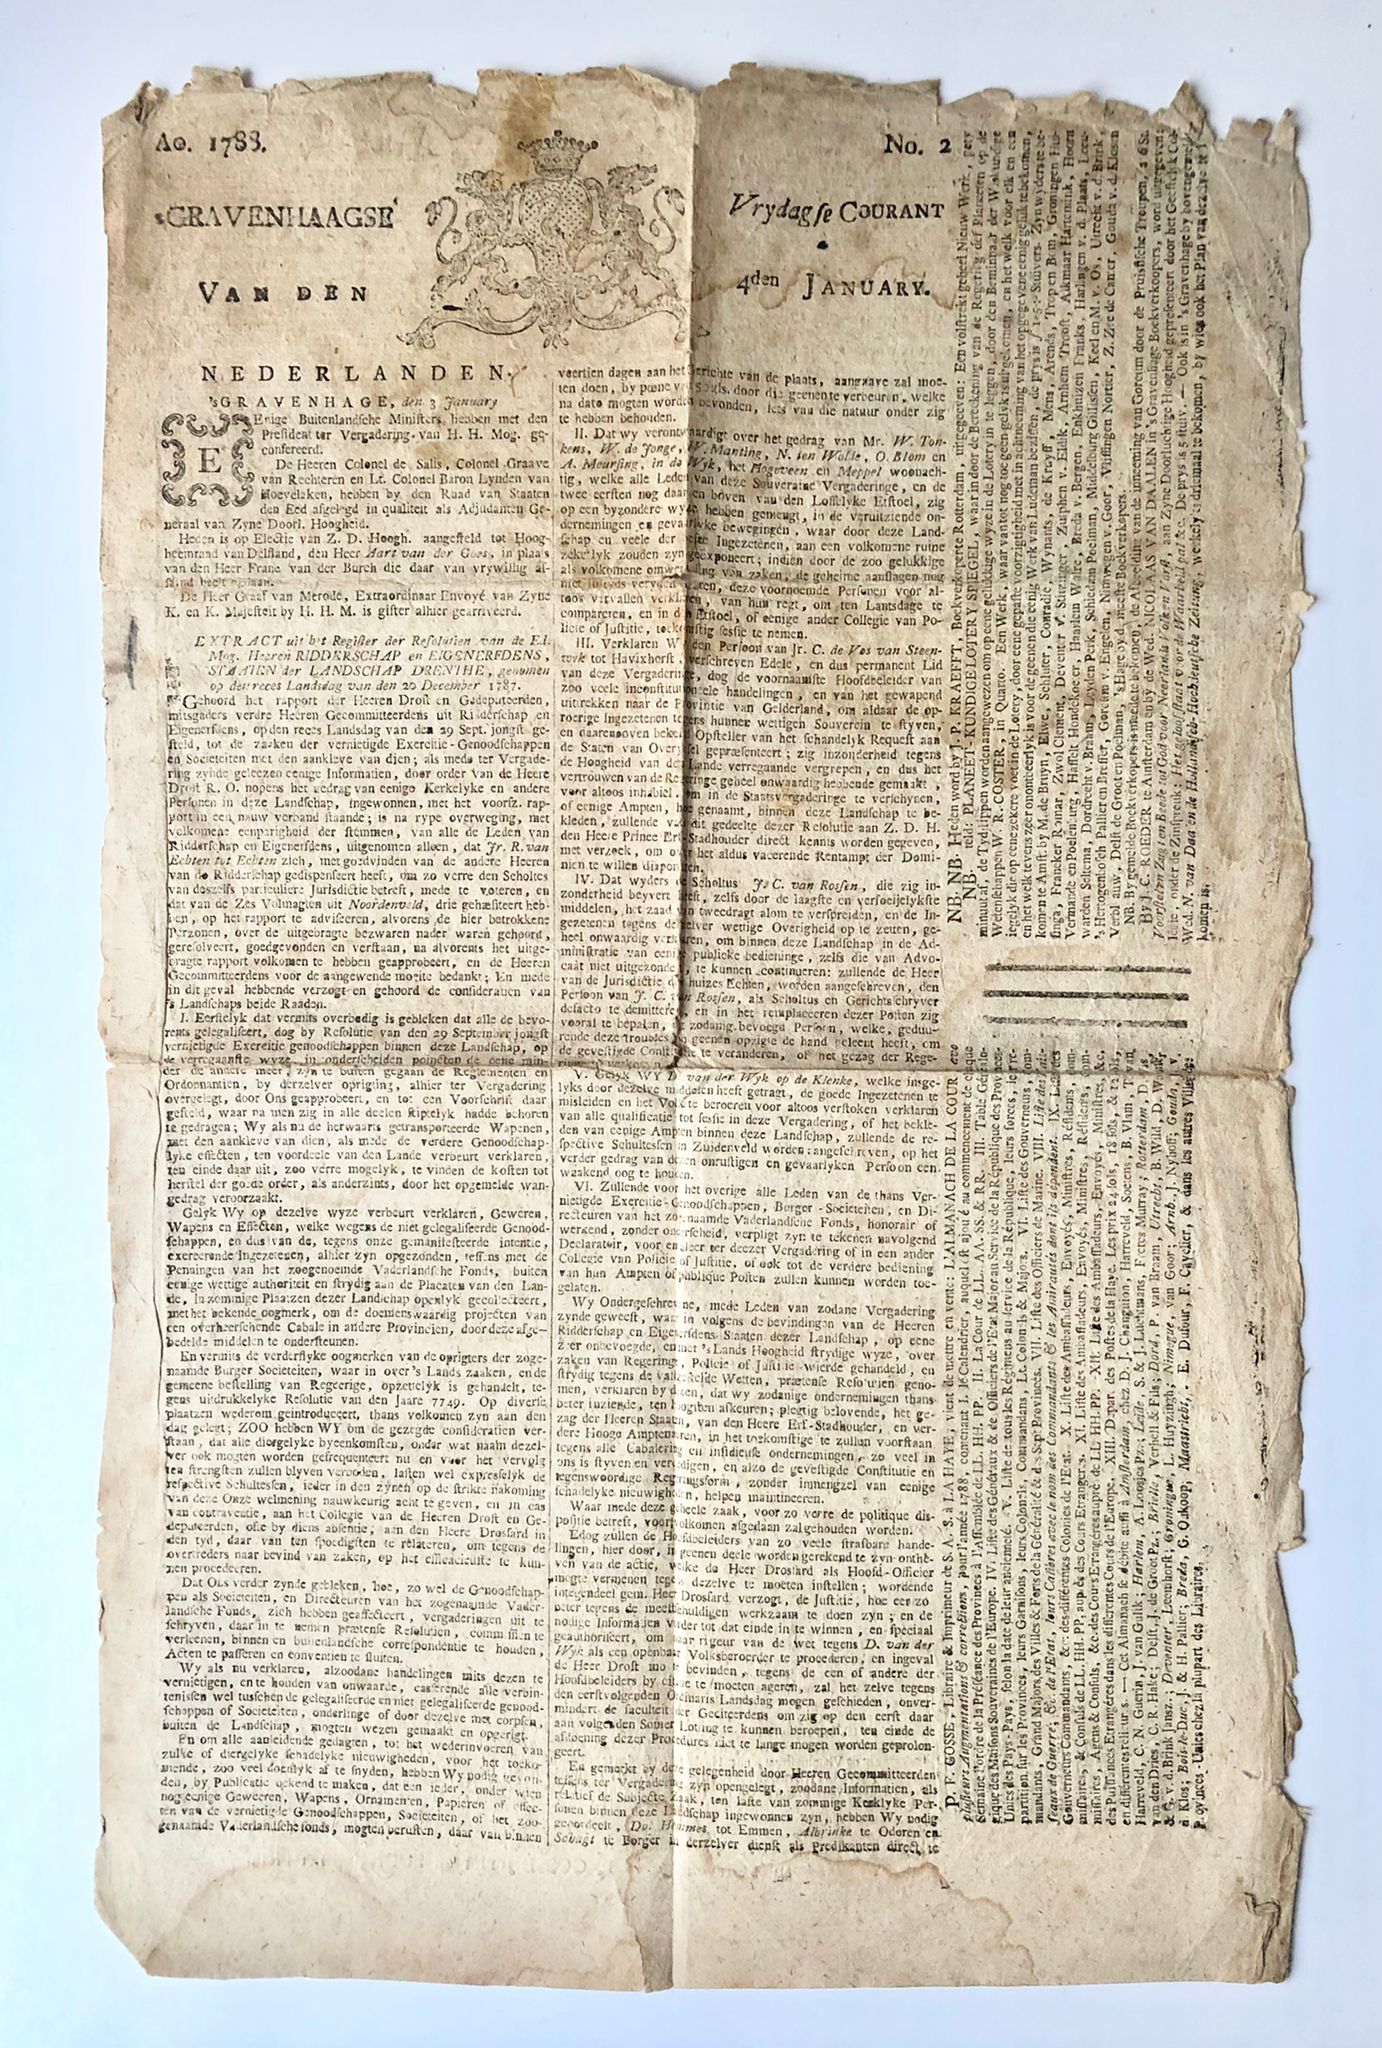 [Drenthe, Den Haag] ’s Gravenhaagse Vrydagse Courant, van den 4den January, Ao. 1788, No. 2, 2 pp.